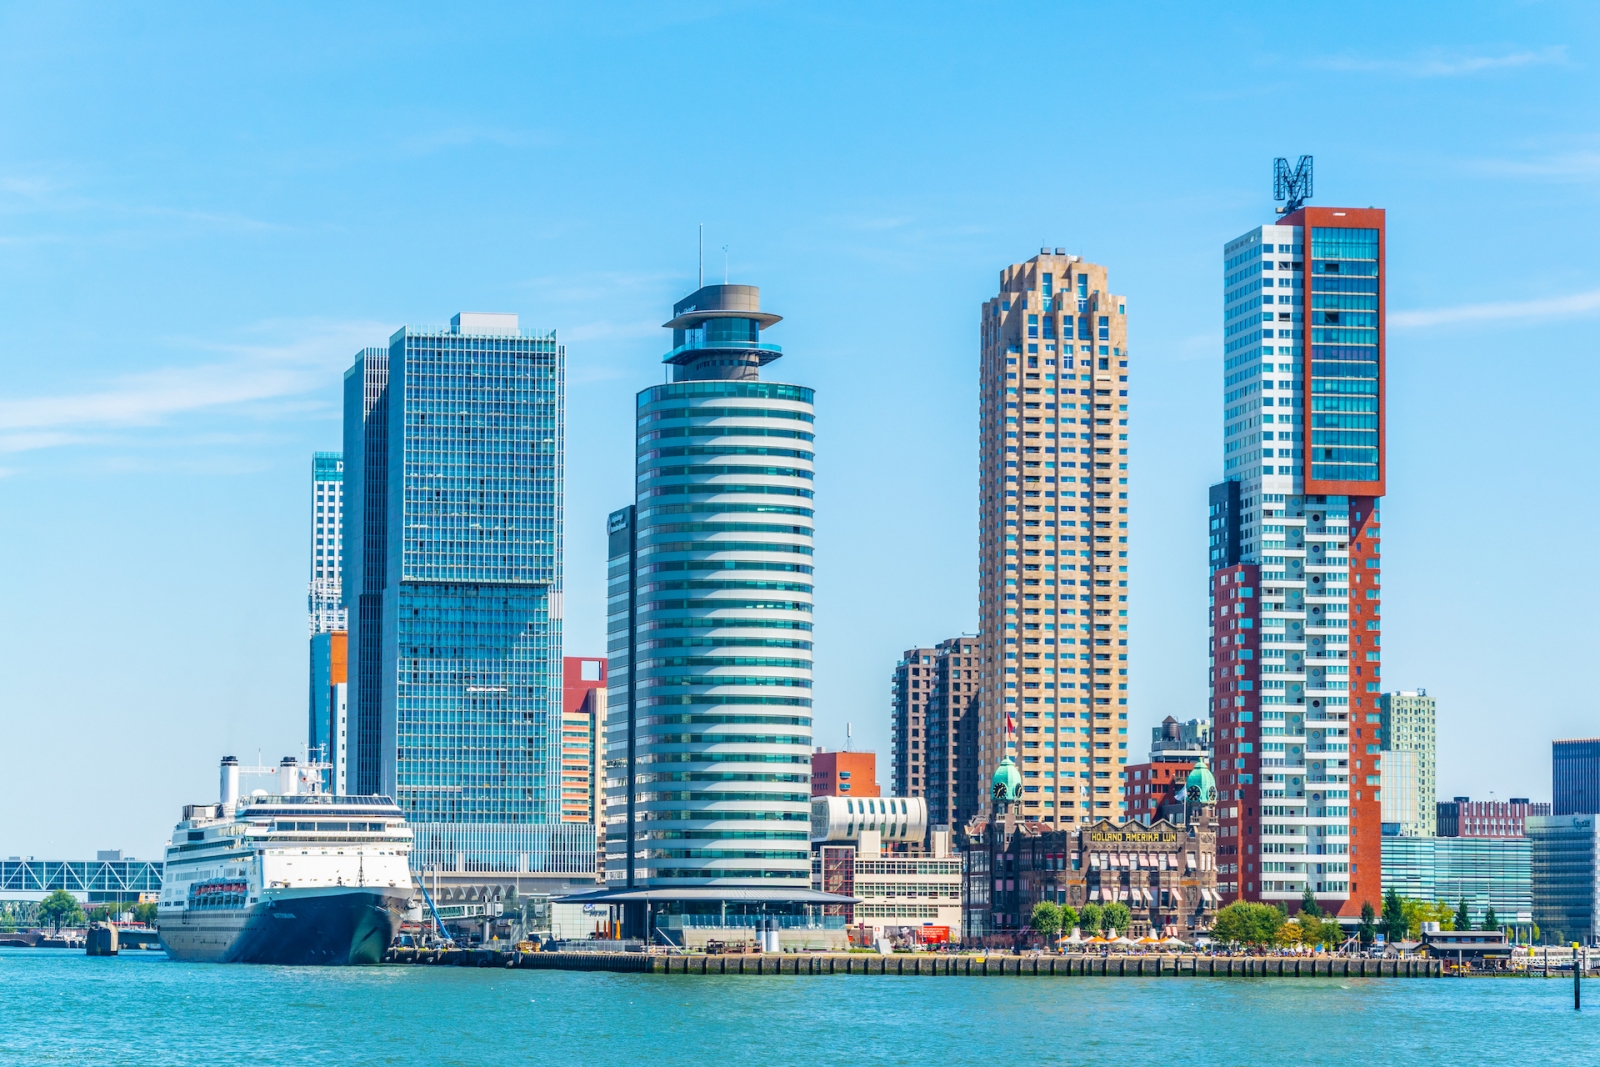 Línea Holland America y otros rascacielos en Rotterdam, Países Bajos